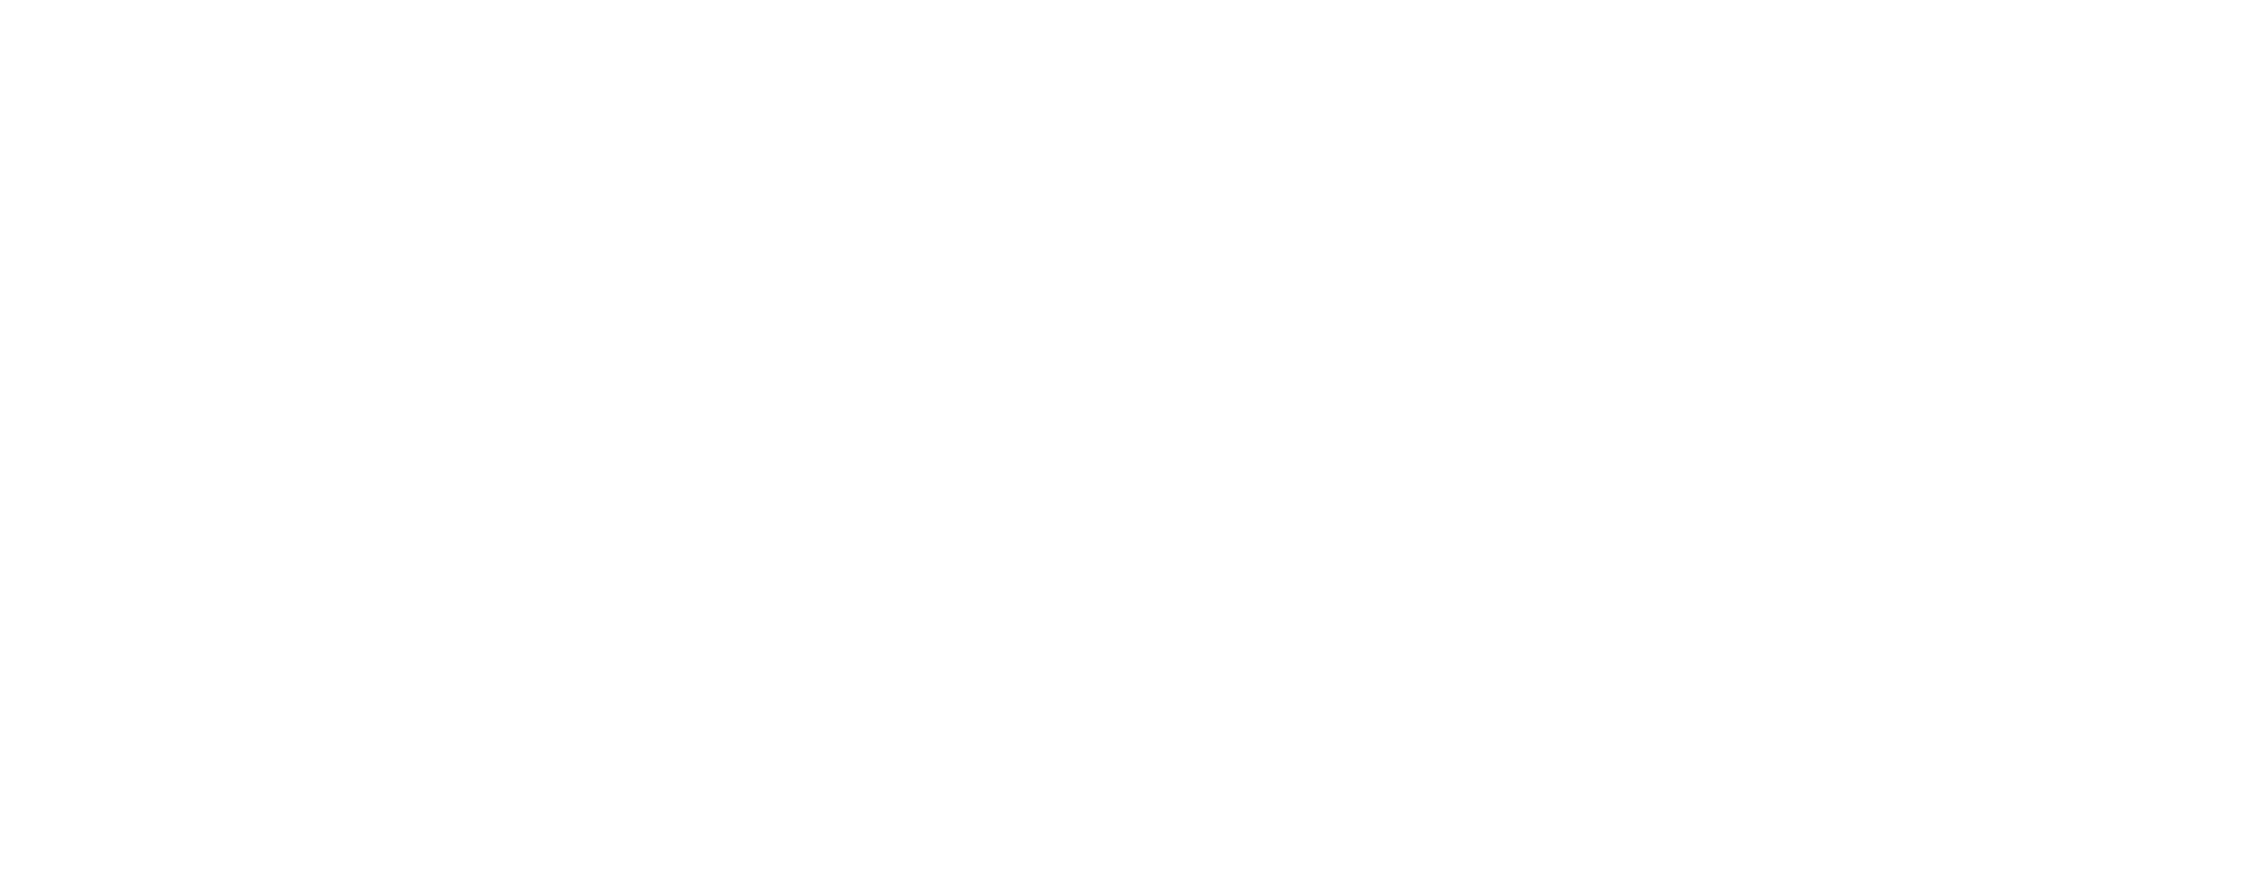 Bojangles Logo - Home State Bojangles